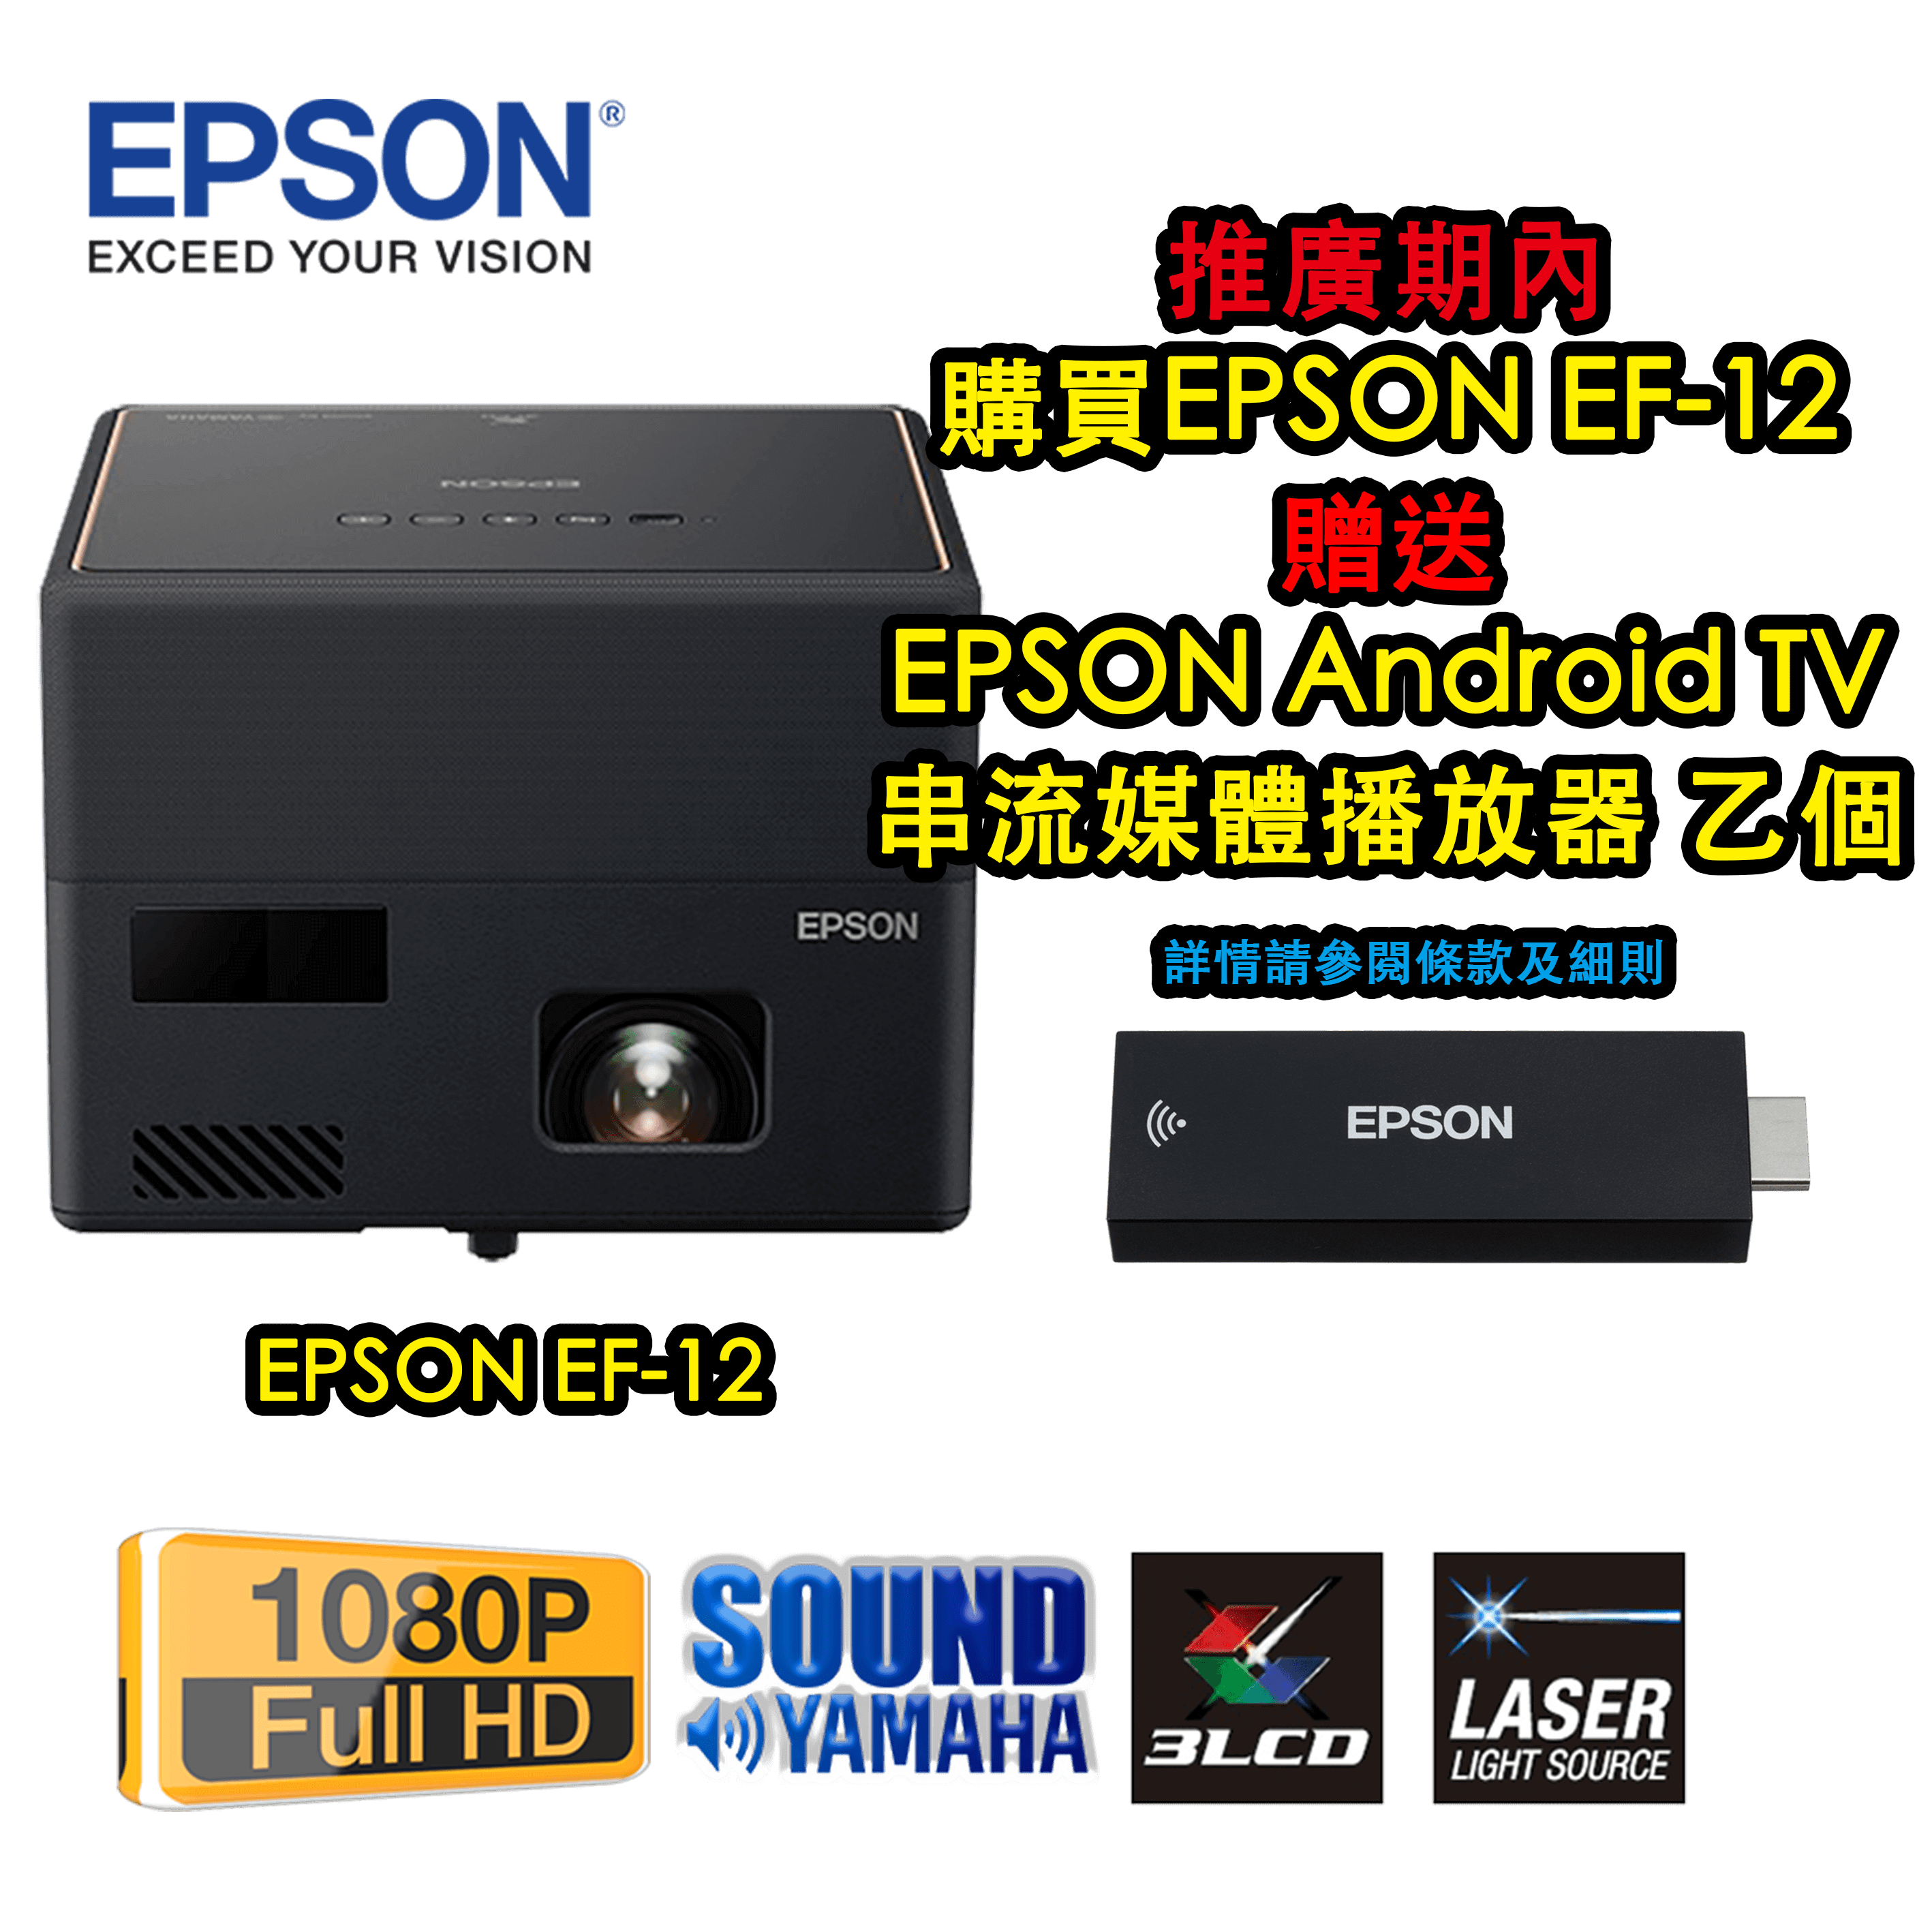 エプソン ドリーミオ ホームプロジェクター EF-12 Full HD 1000lm ヤマハ製スピーカー付き AndroidTV機能搭載モデル  ホームシアターシステム